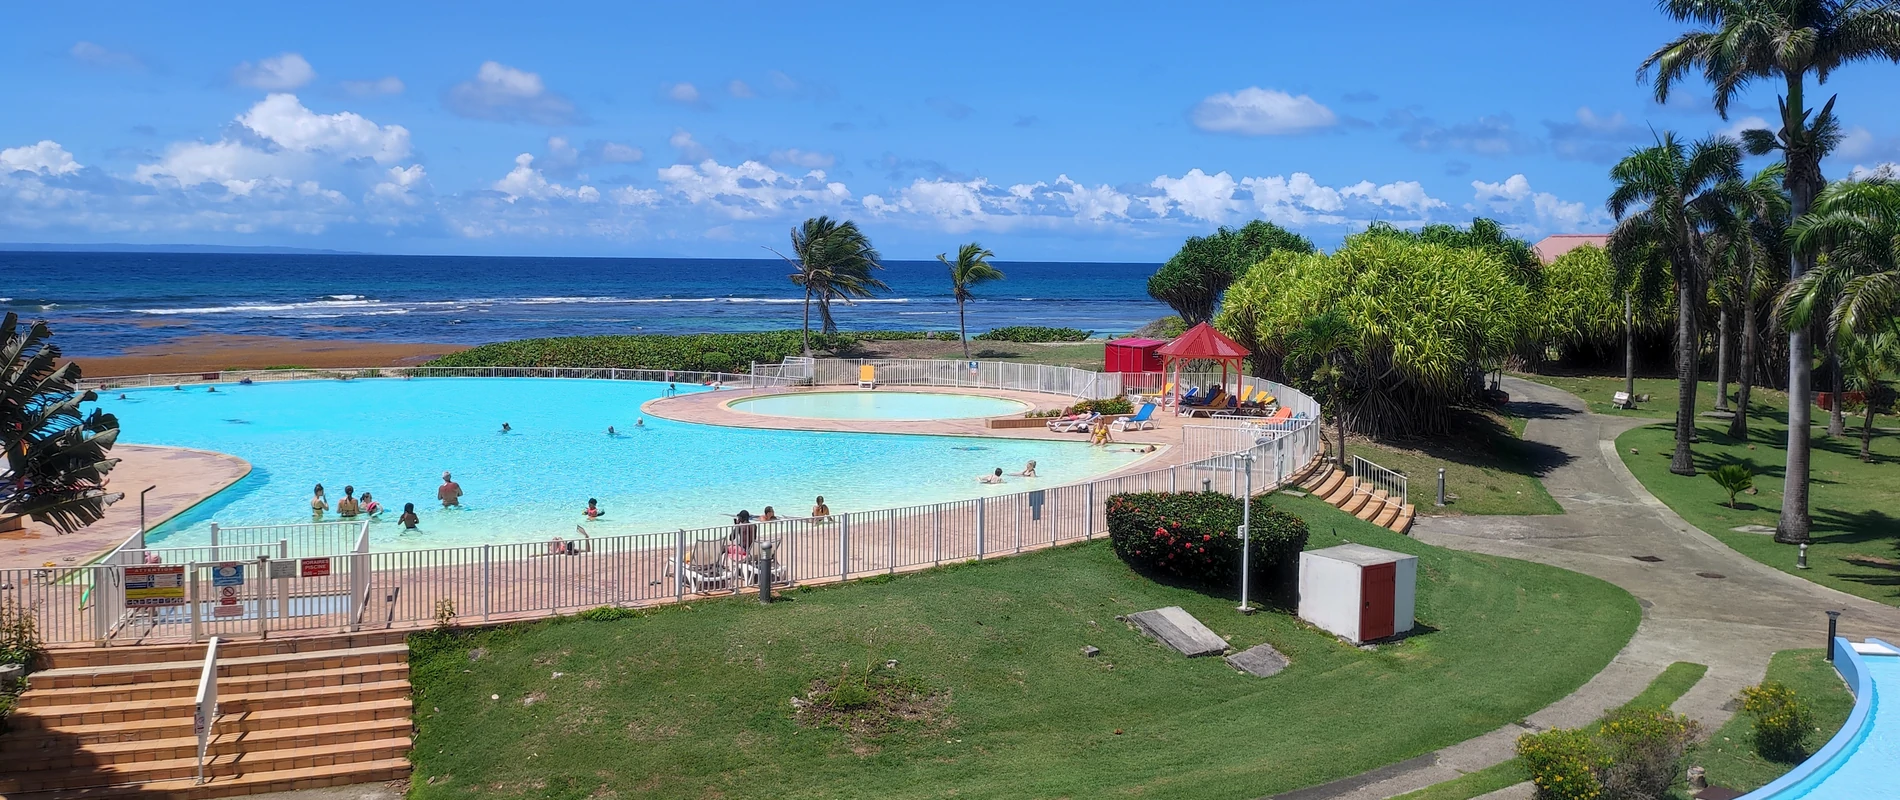 Location piscine et bord de mer Guadeloupe